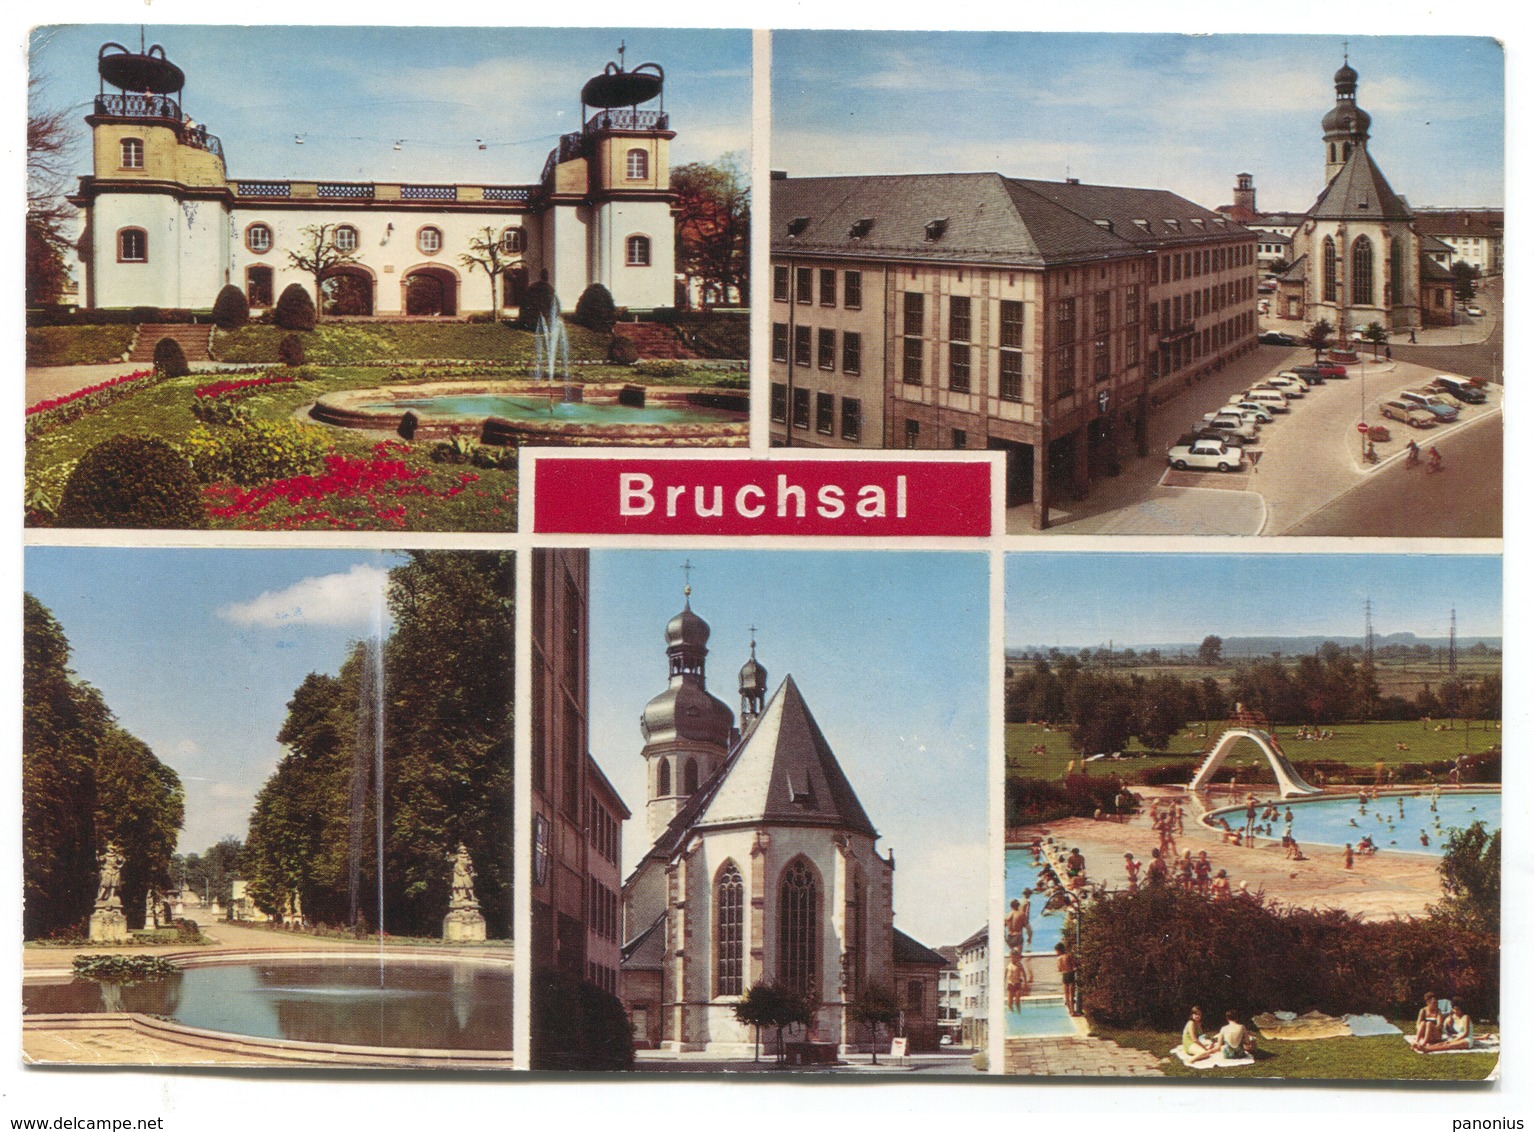 BRUCHSAL Germany - Bruchsal